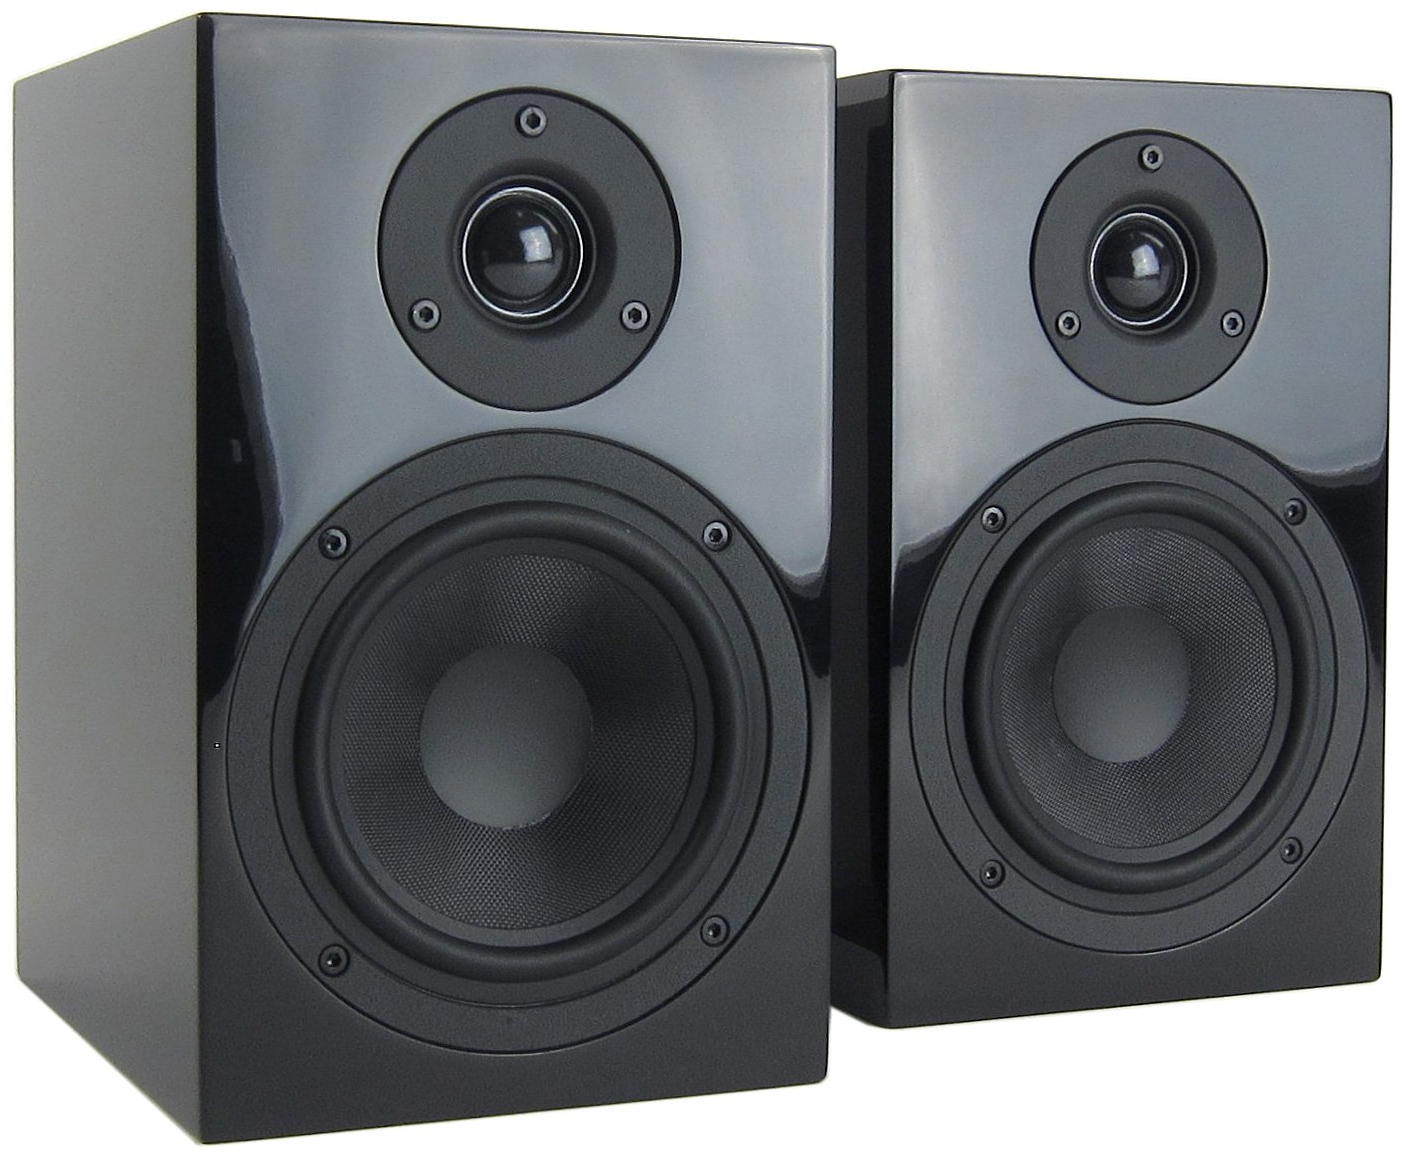 Полочная акустика Pro-Ject Speaker Box 5 black risenke speaker mic for motorola apx1000 apx2000 apx4000 apx6000 apx7000 apx8000 xpr6350 xpr6380 xpr6500 xpr6580